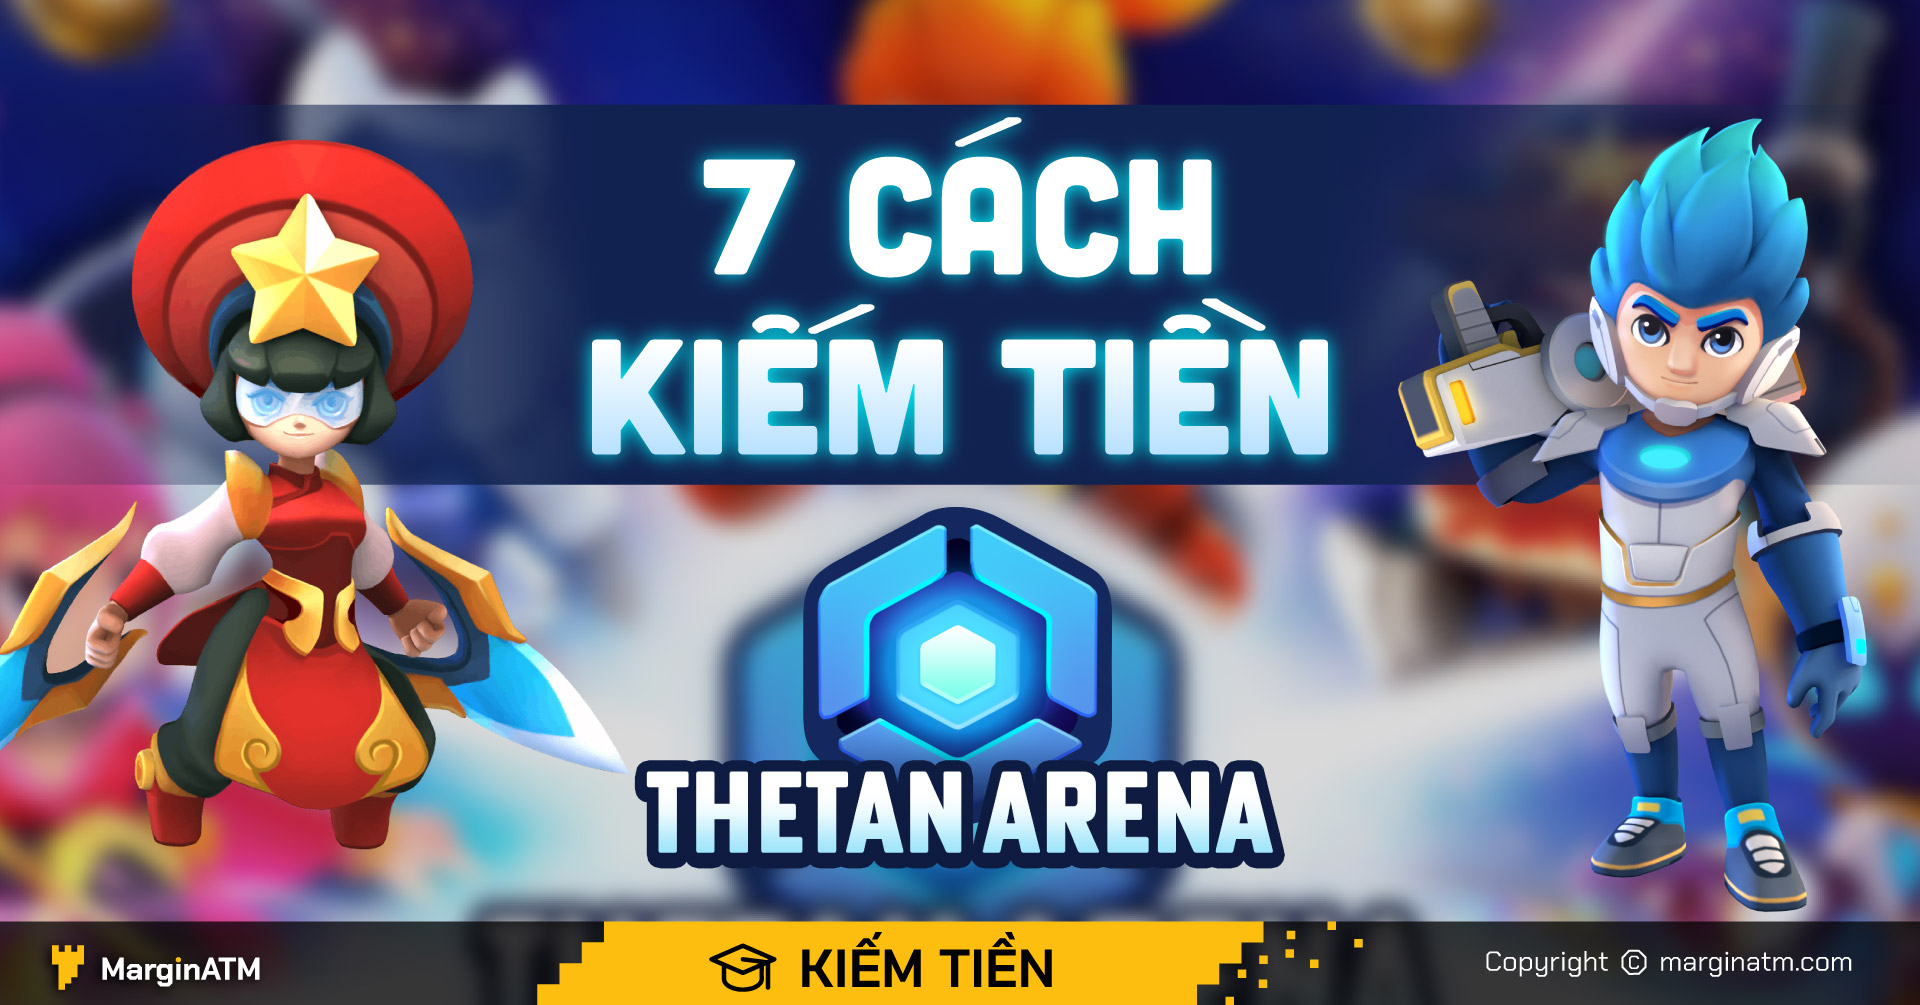 Cách mua và bán Thetan box trong Thetan Arena? 
